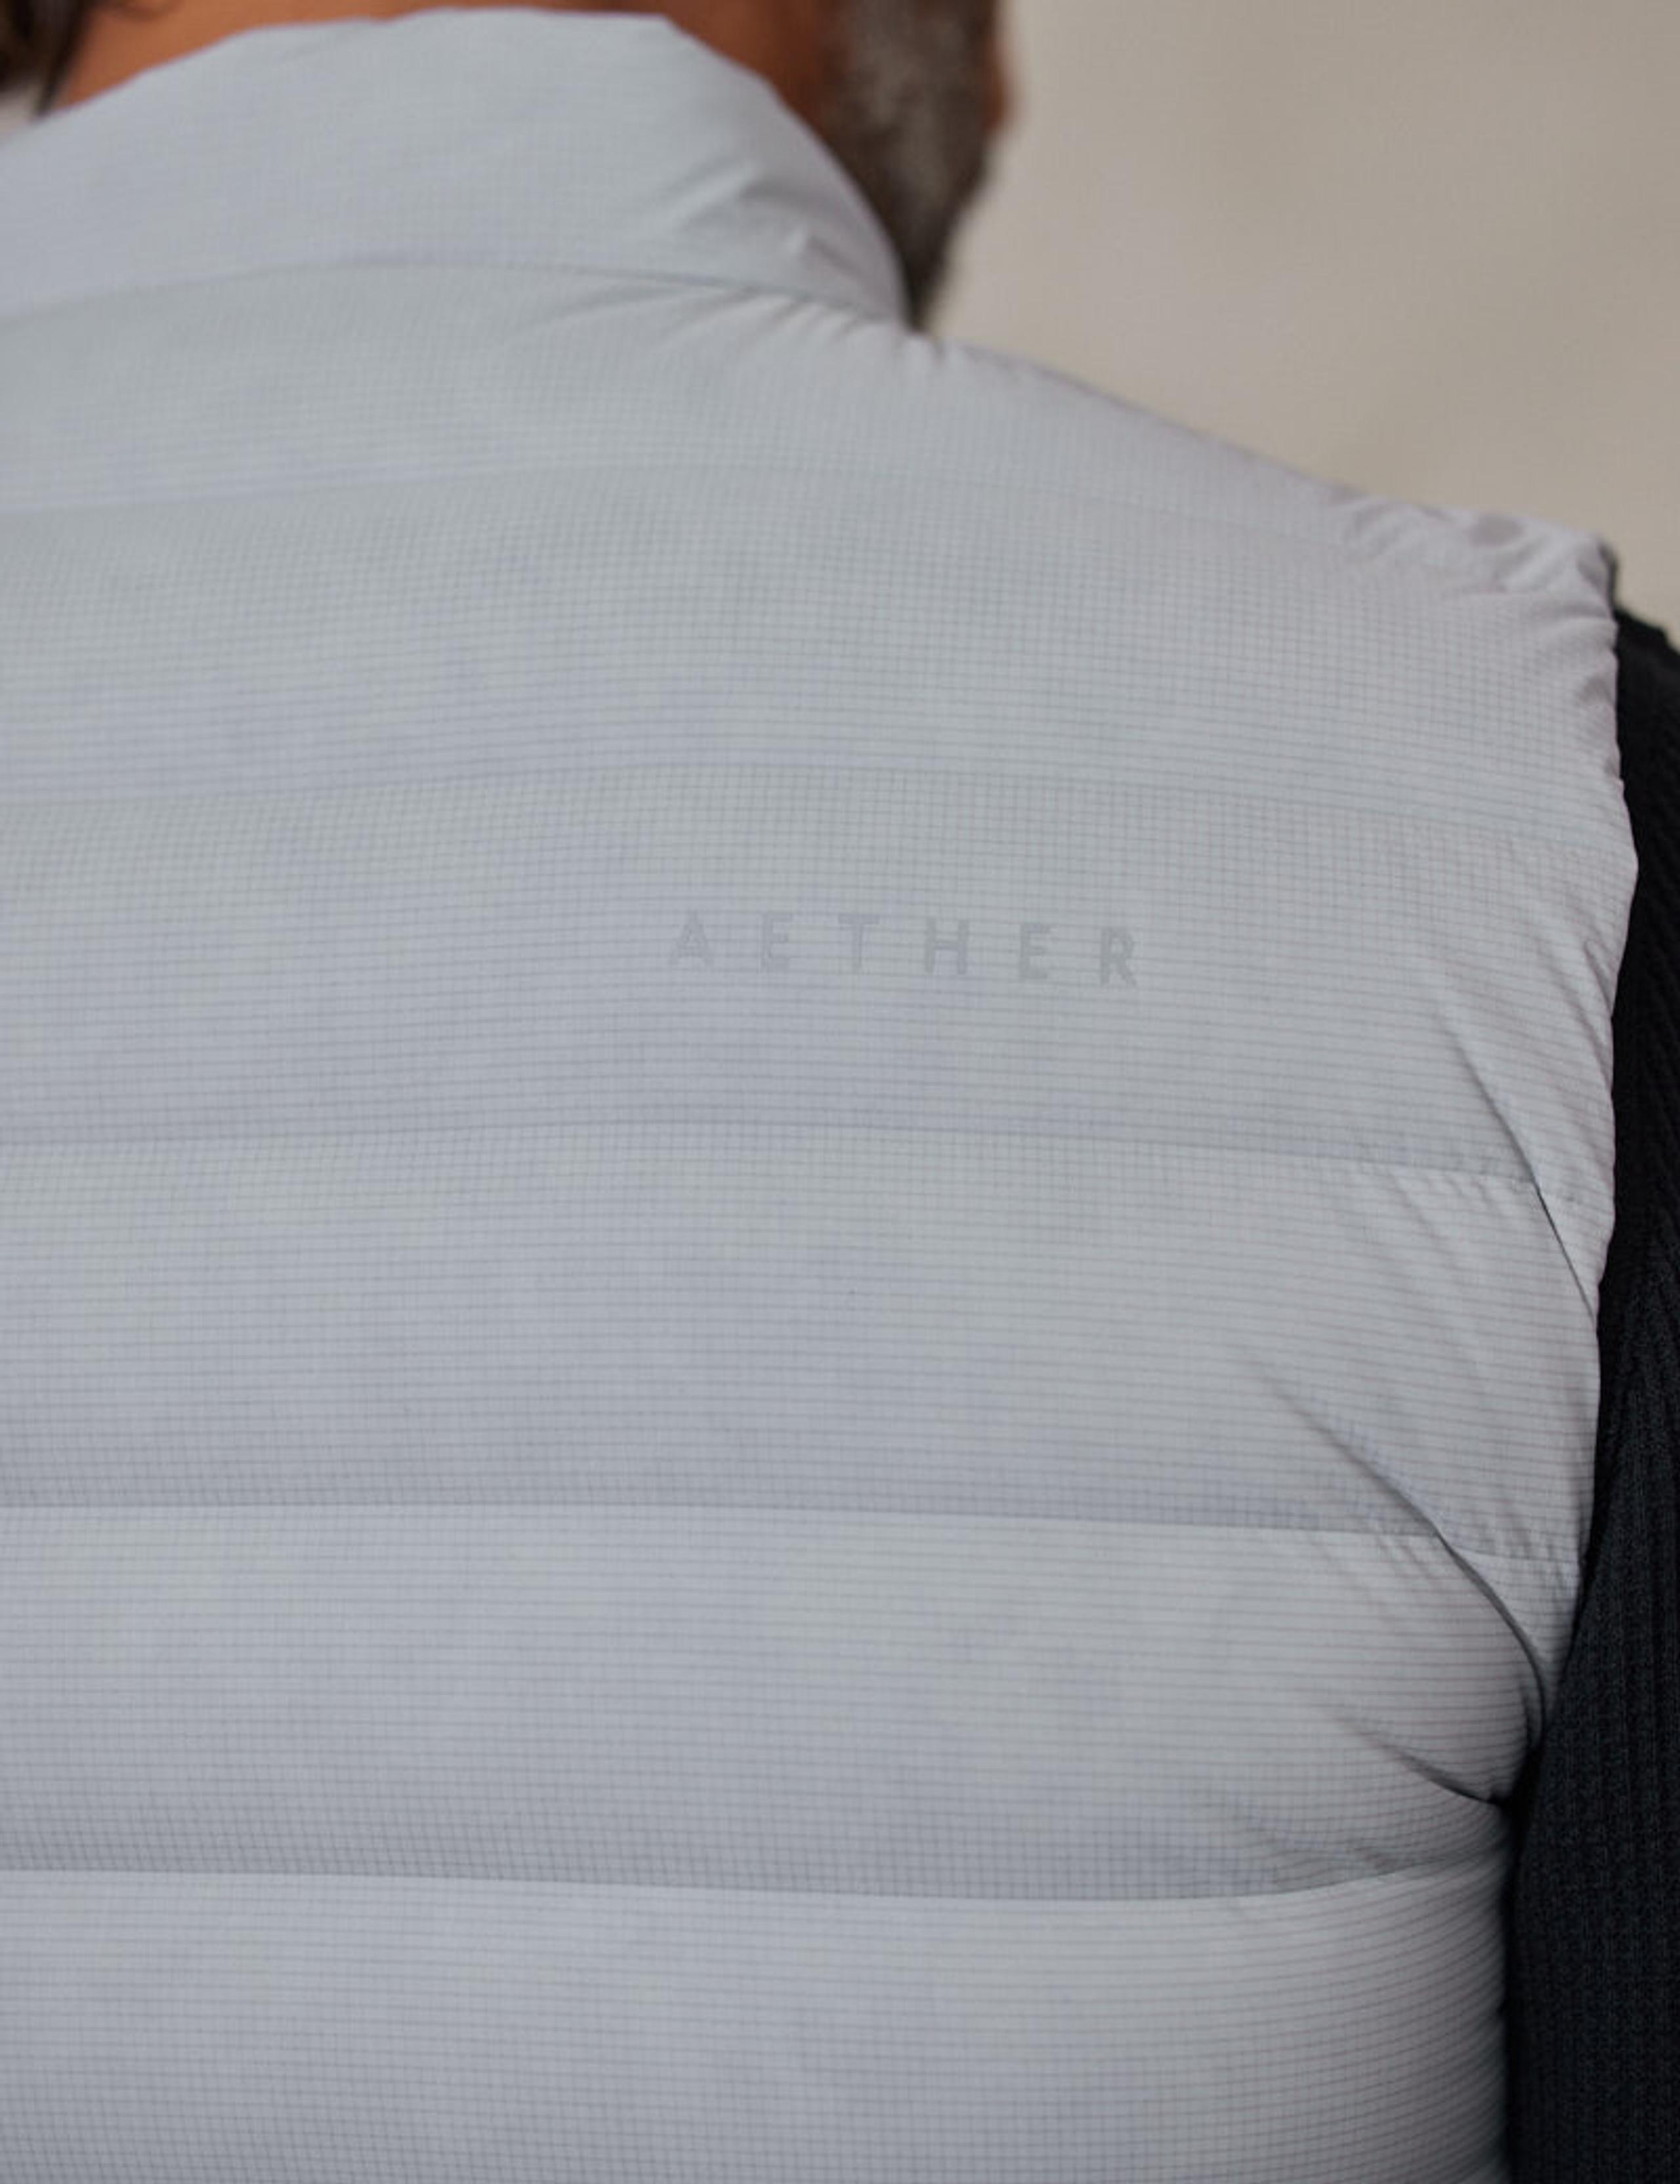 Closeup of AETHER logo on back shoulder